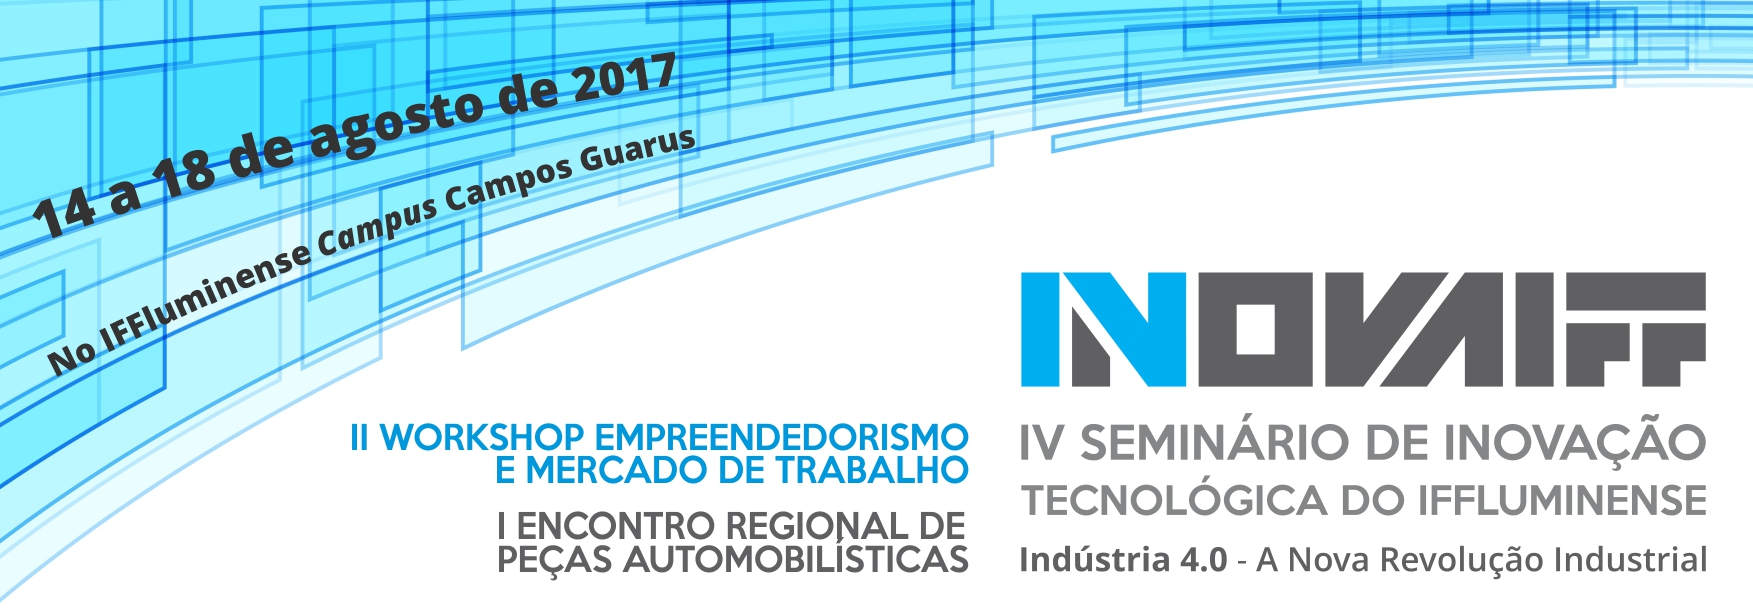 IV Seminário de Inovação Tecnológica do IFluminense, II Workshop Empreendedorismo e Mercado de Trabalho e I Encontro Regional de Peças Automobilísticas